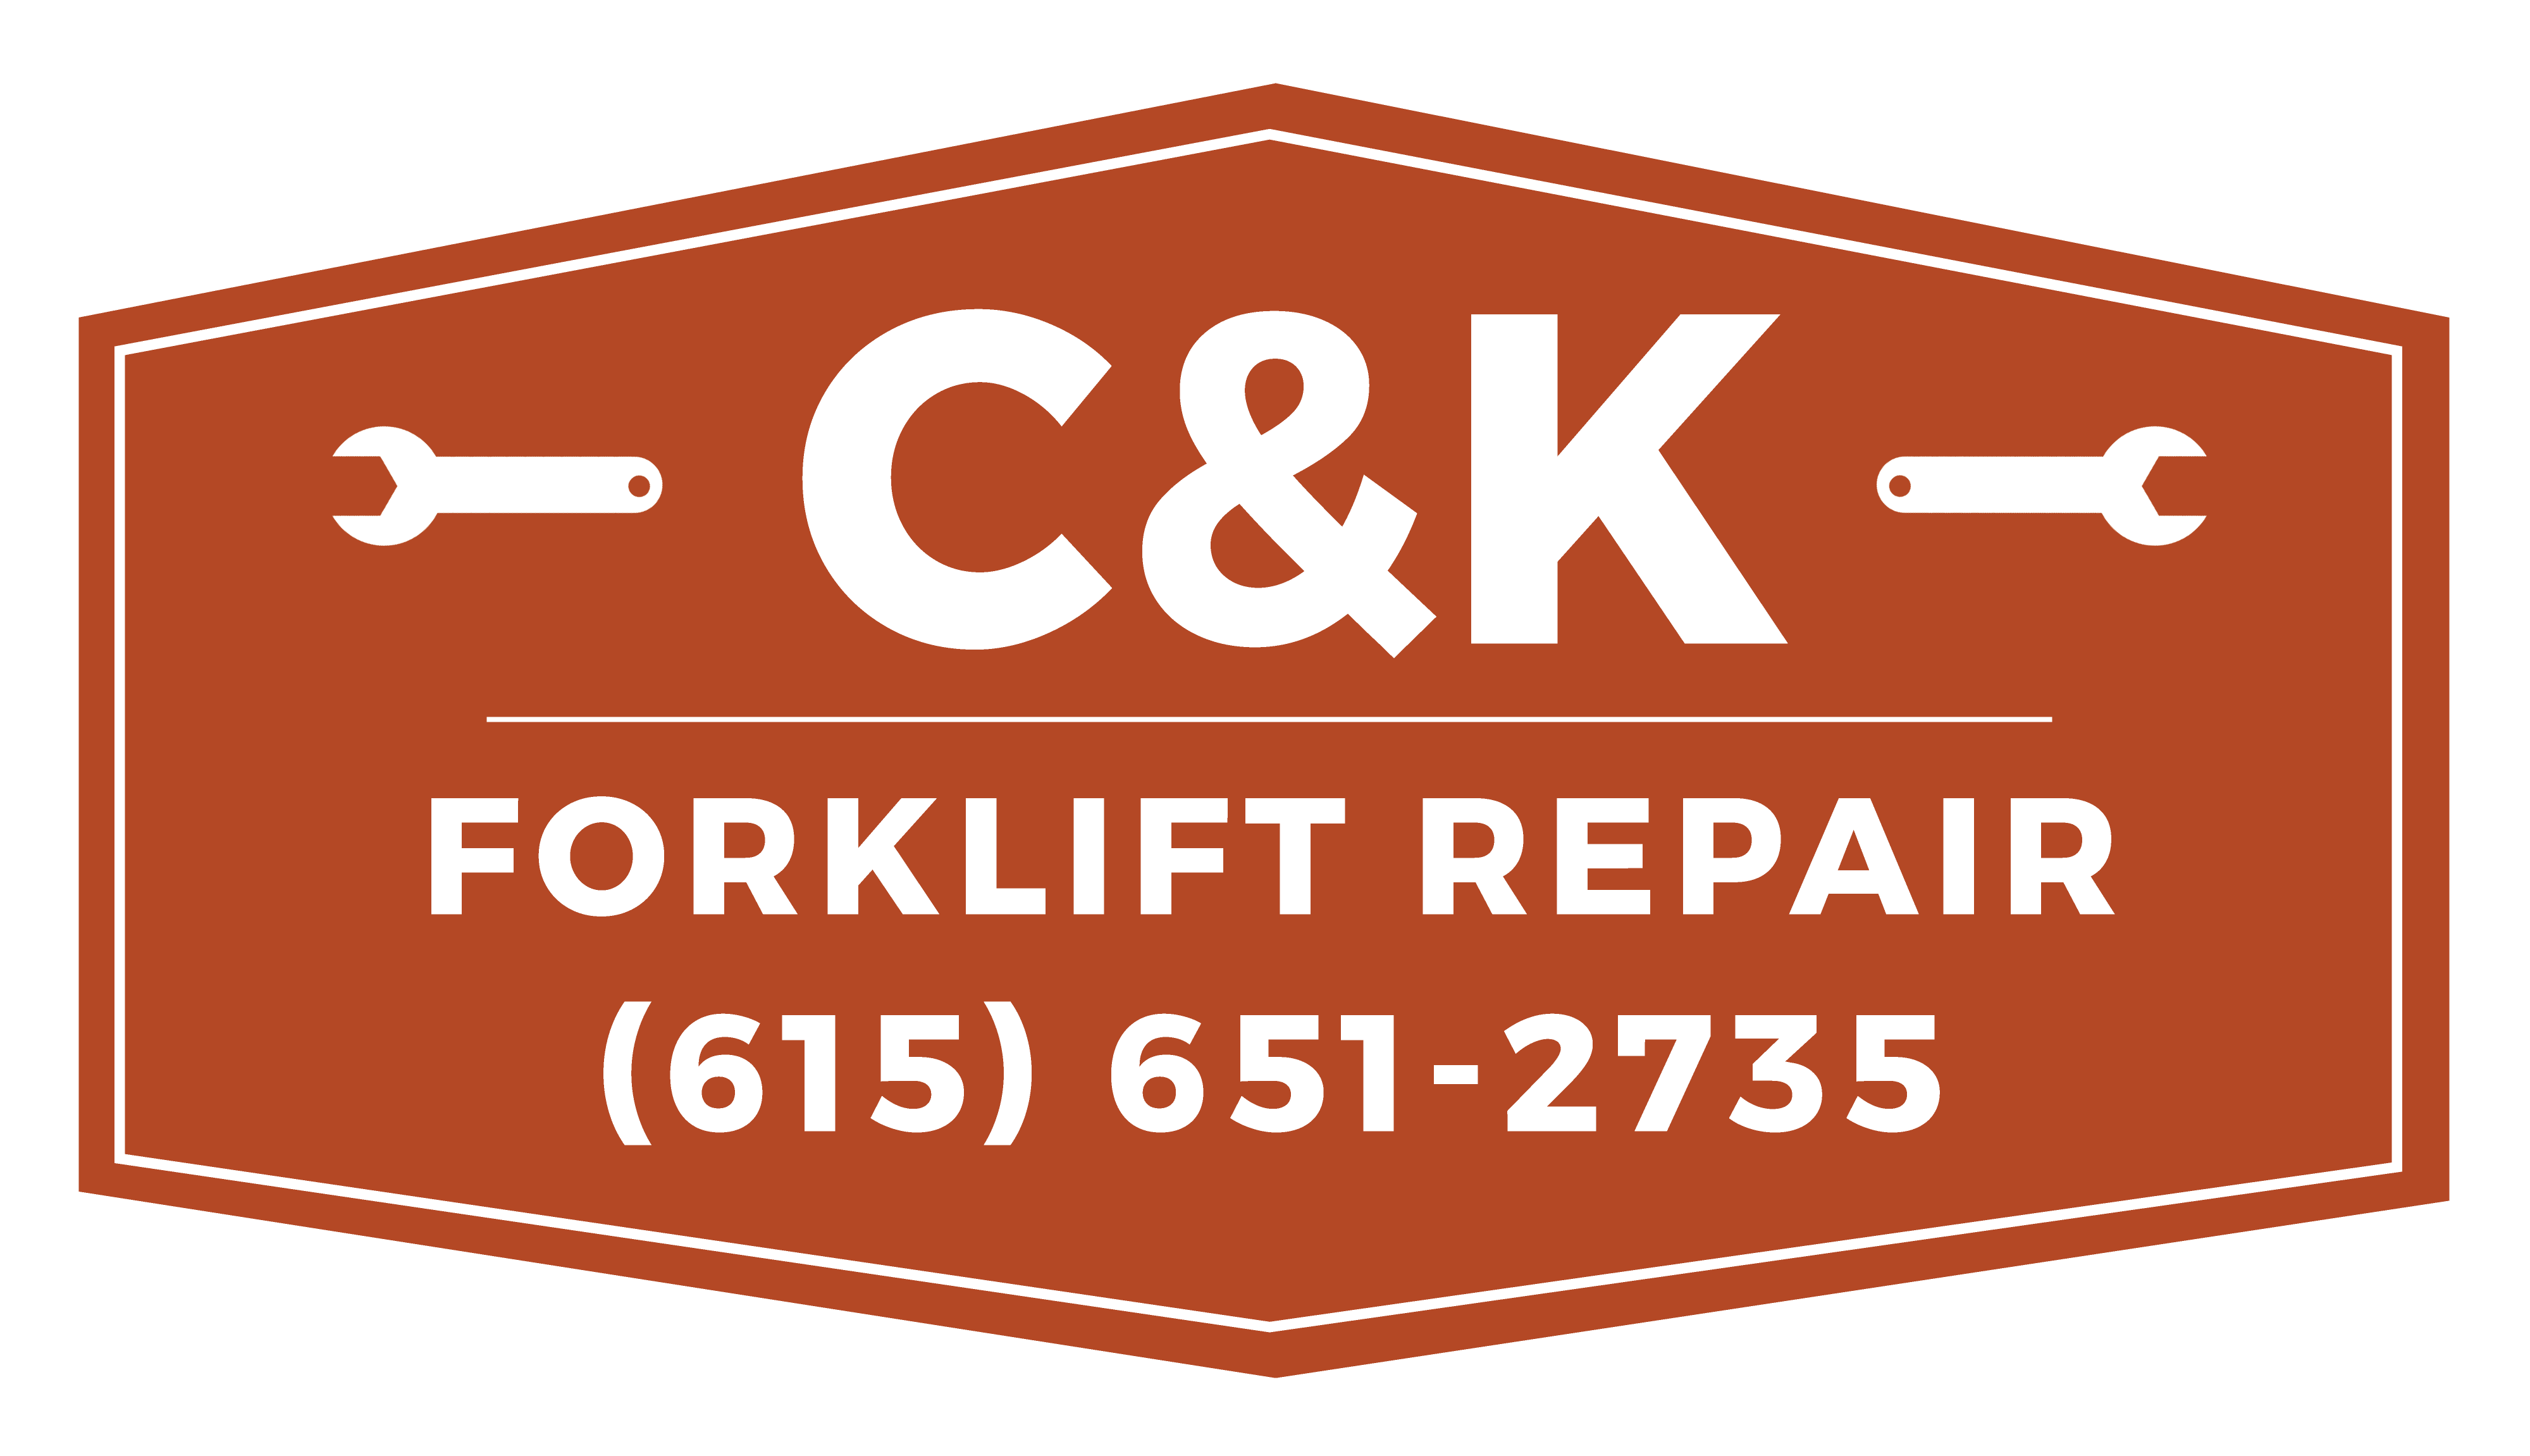 Ck Forklift Repair Rapid Response Forklift Repair